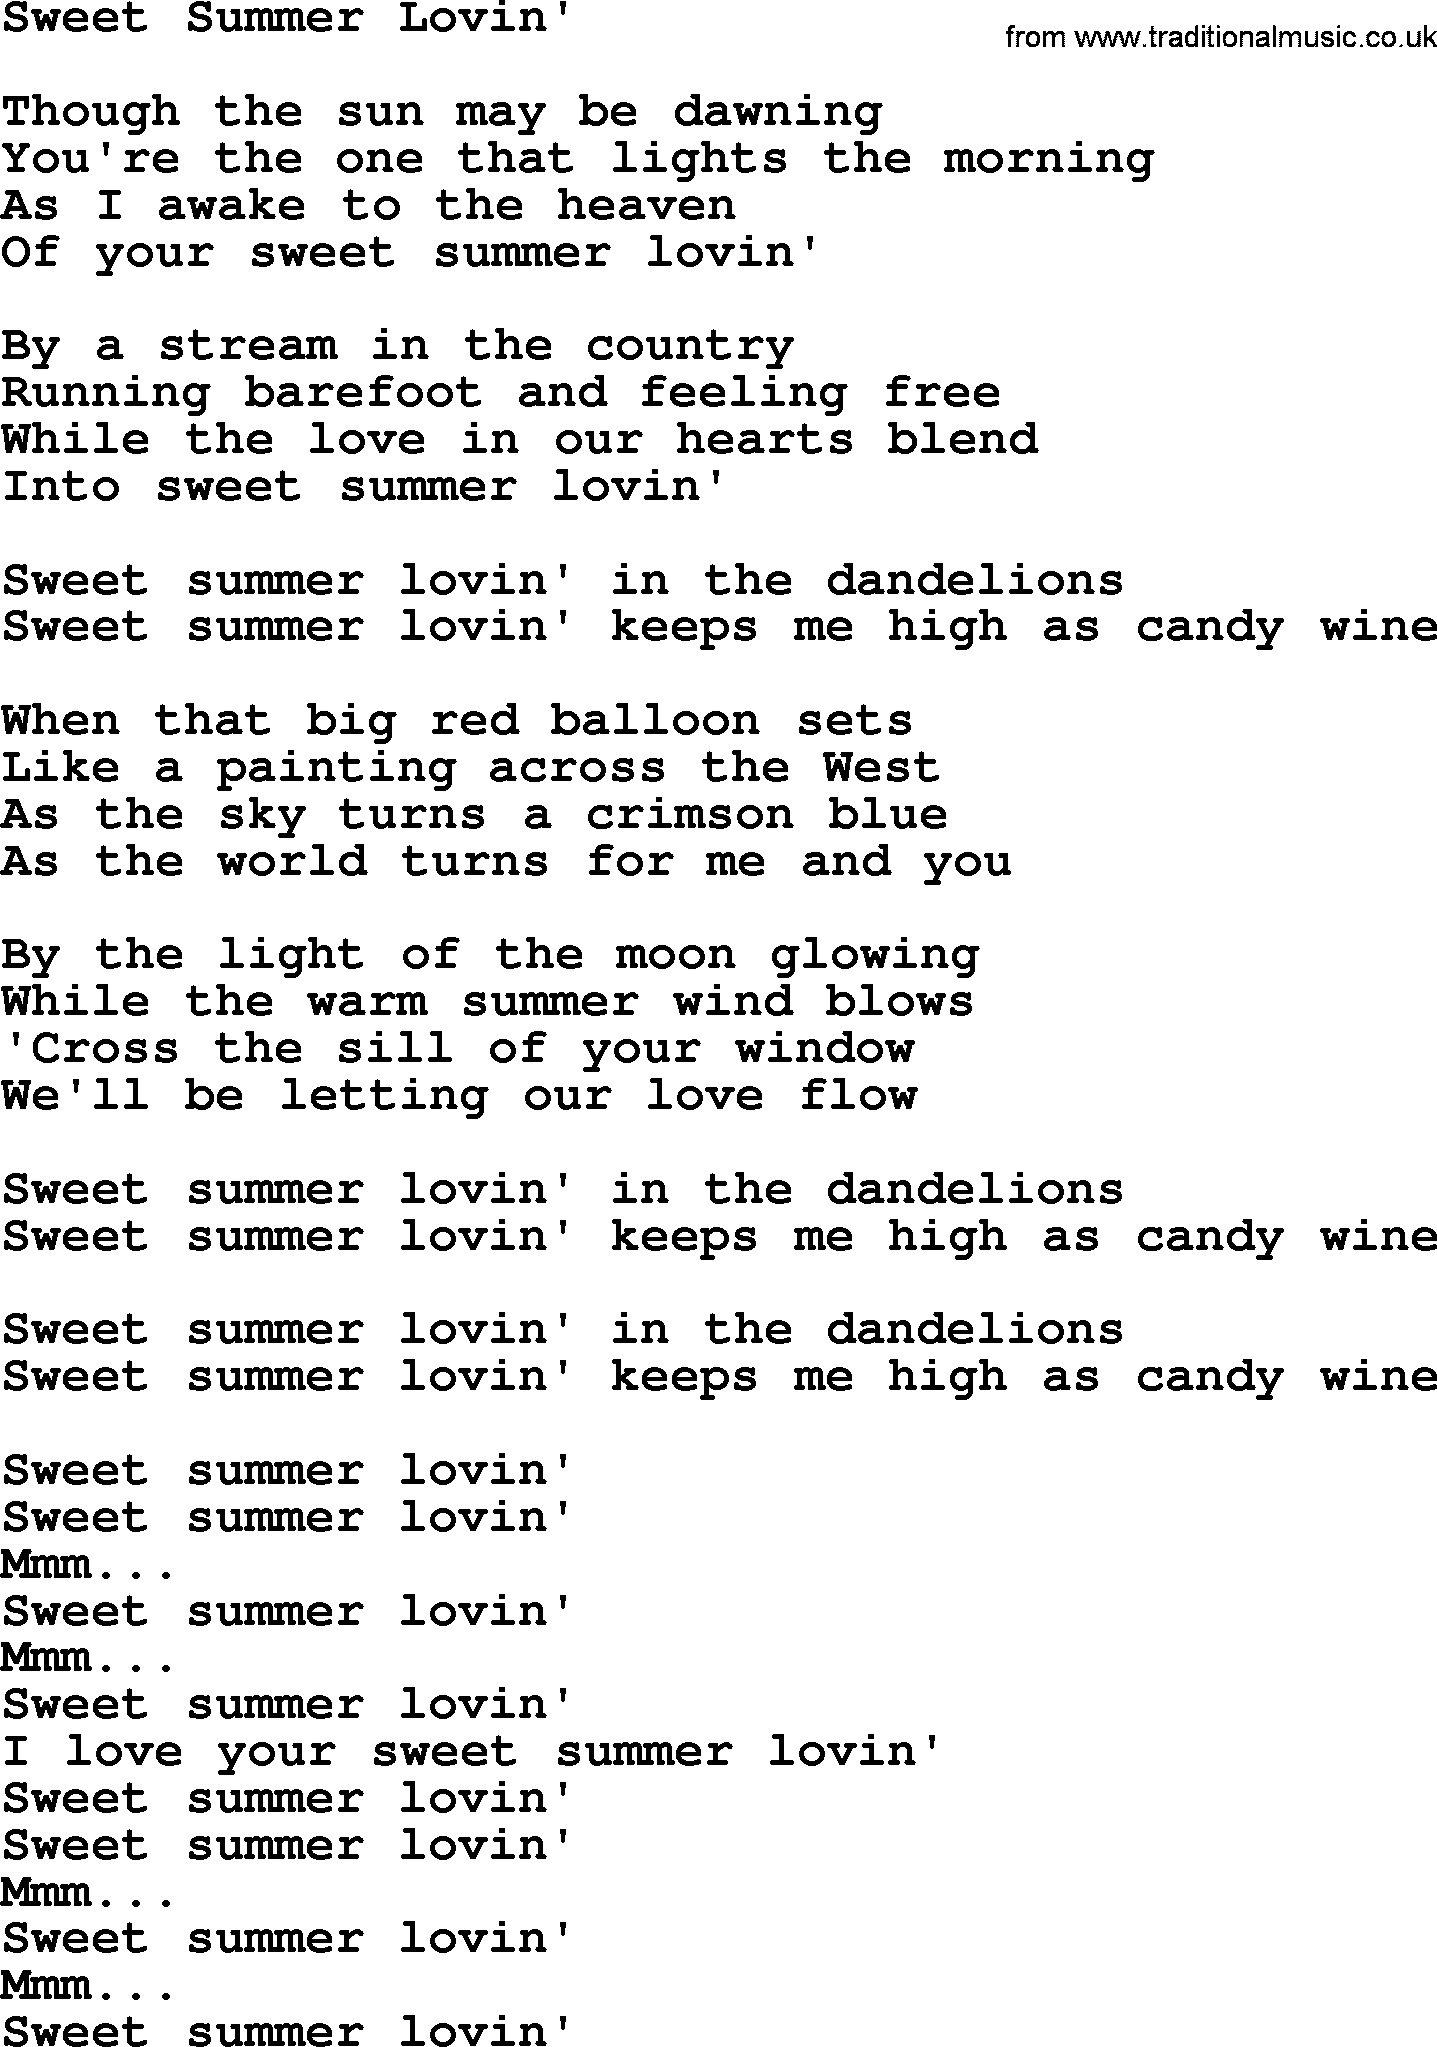 Dolly Parton song: Sweet Summer Lovin', lyrics